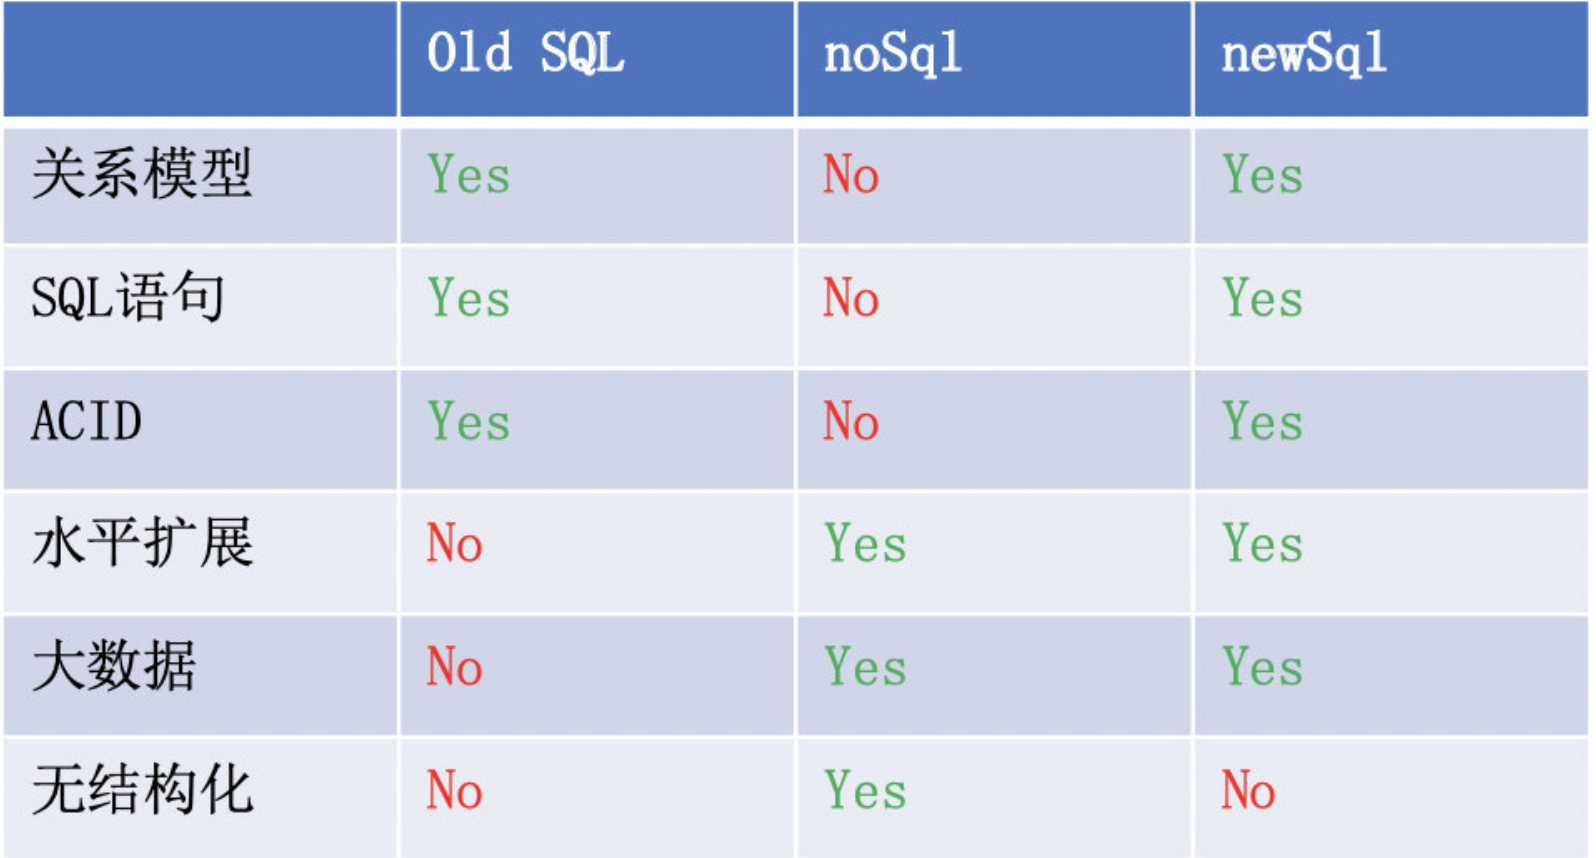 newSQL 到底是什么？